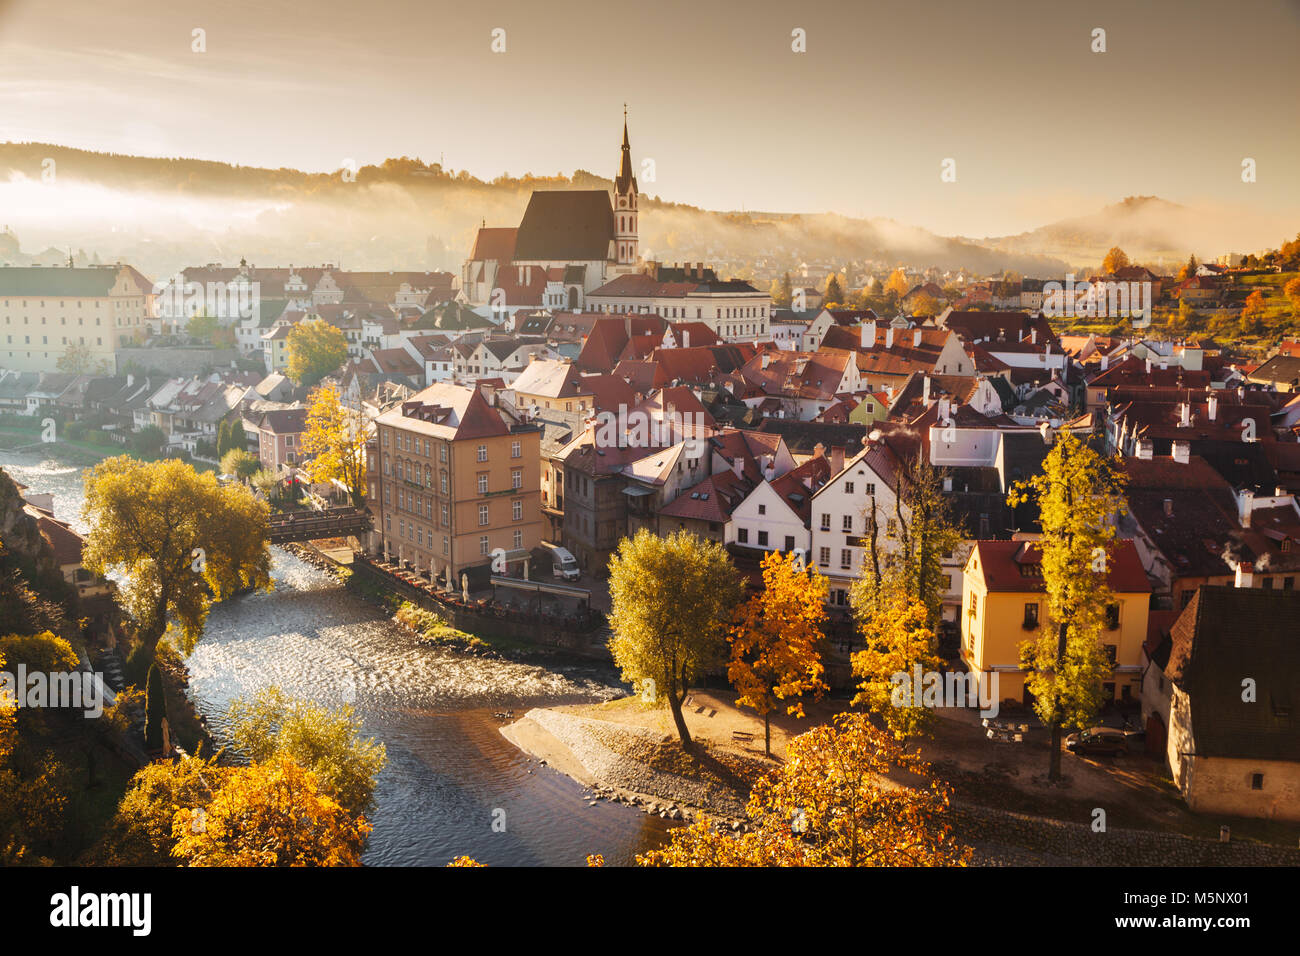 Historische Stadt Cesky Krumlov, die zum UNESCO-Weltkulturerbe seit 1992, in der wunderschönen Golden Morgen bei Sonnenaufgang im Herbst, Böhmen, Tschechische Republik Stockfoto